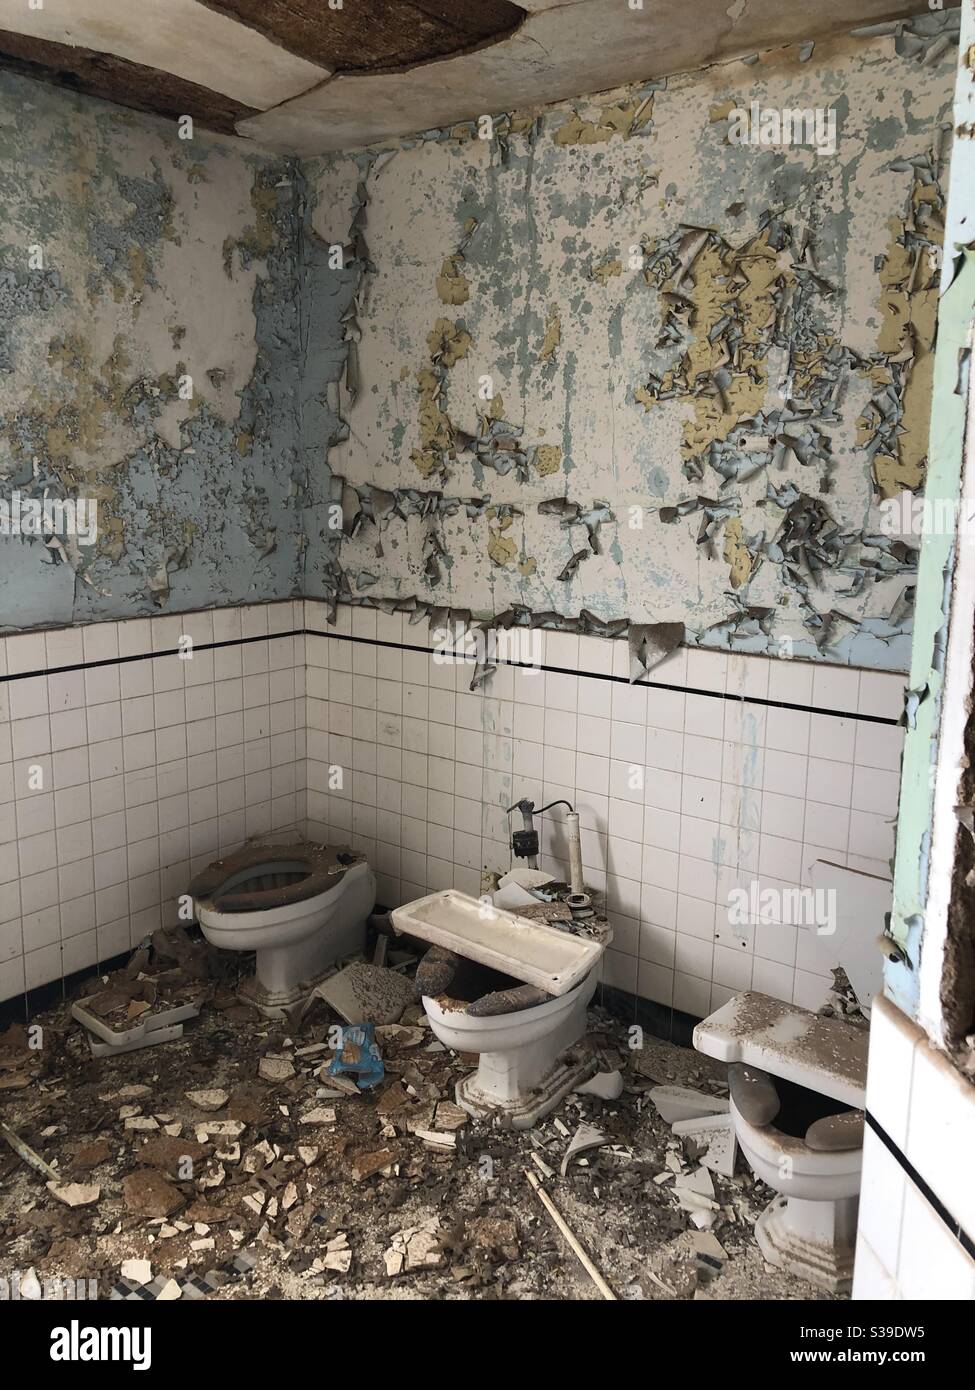 El baño daba miedo abandonado Foto de stock